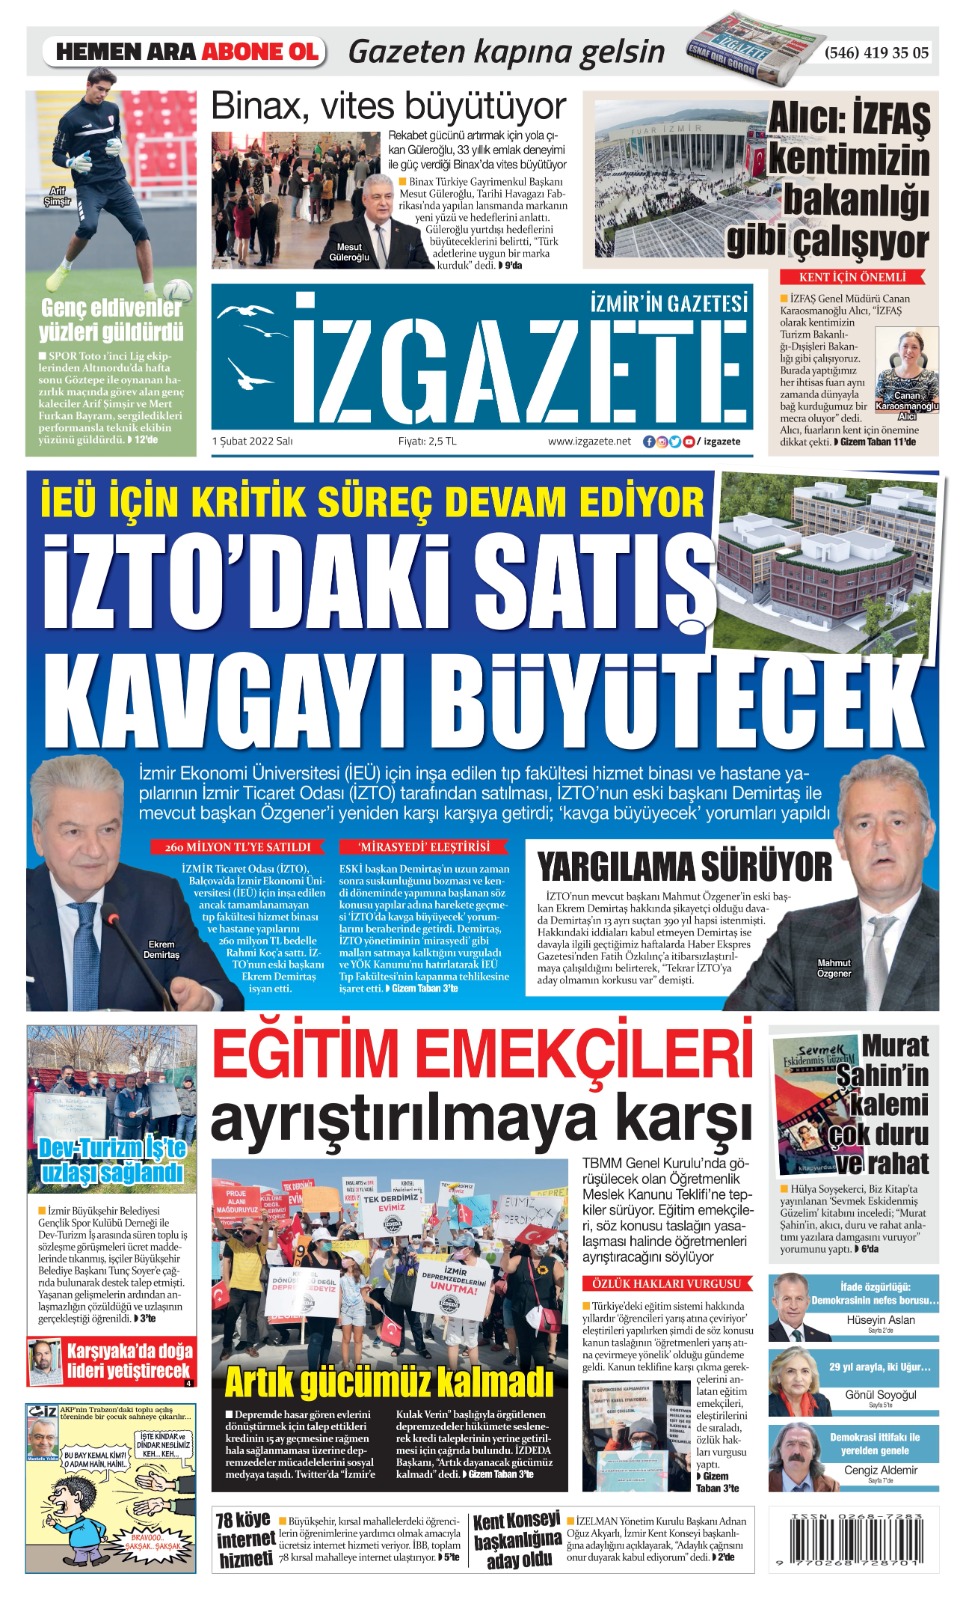 İz Gazete - İzmir'in Gazetesi - 01.02.2022 Manşeti